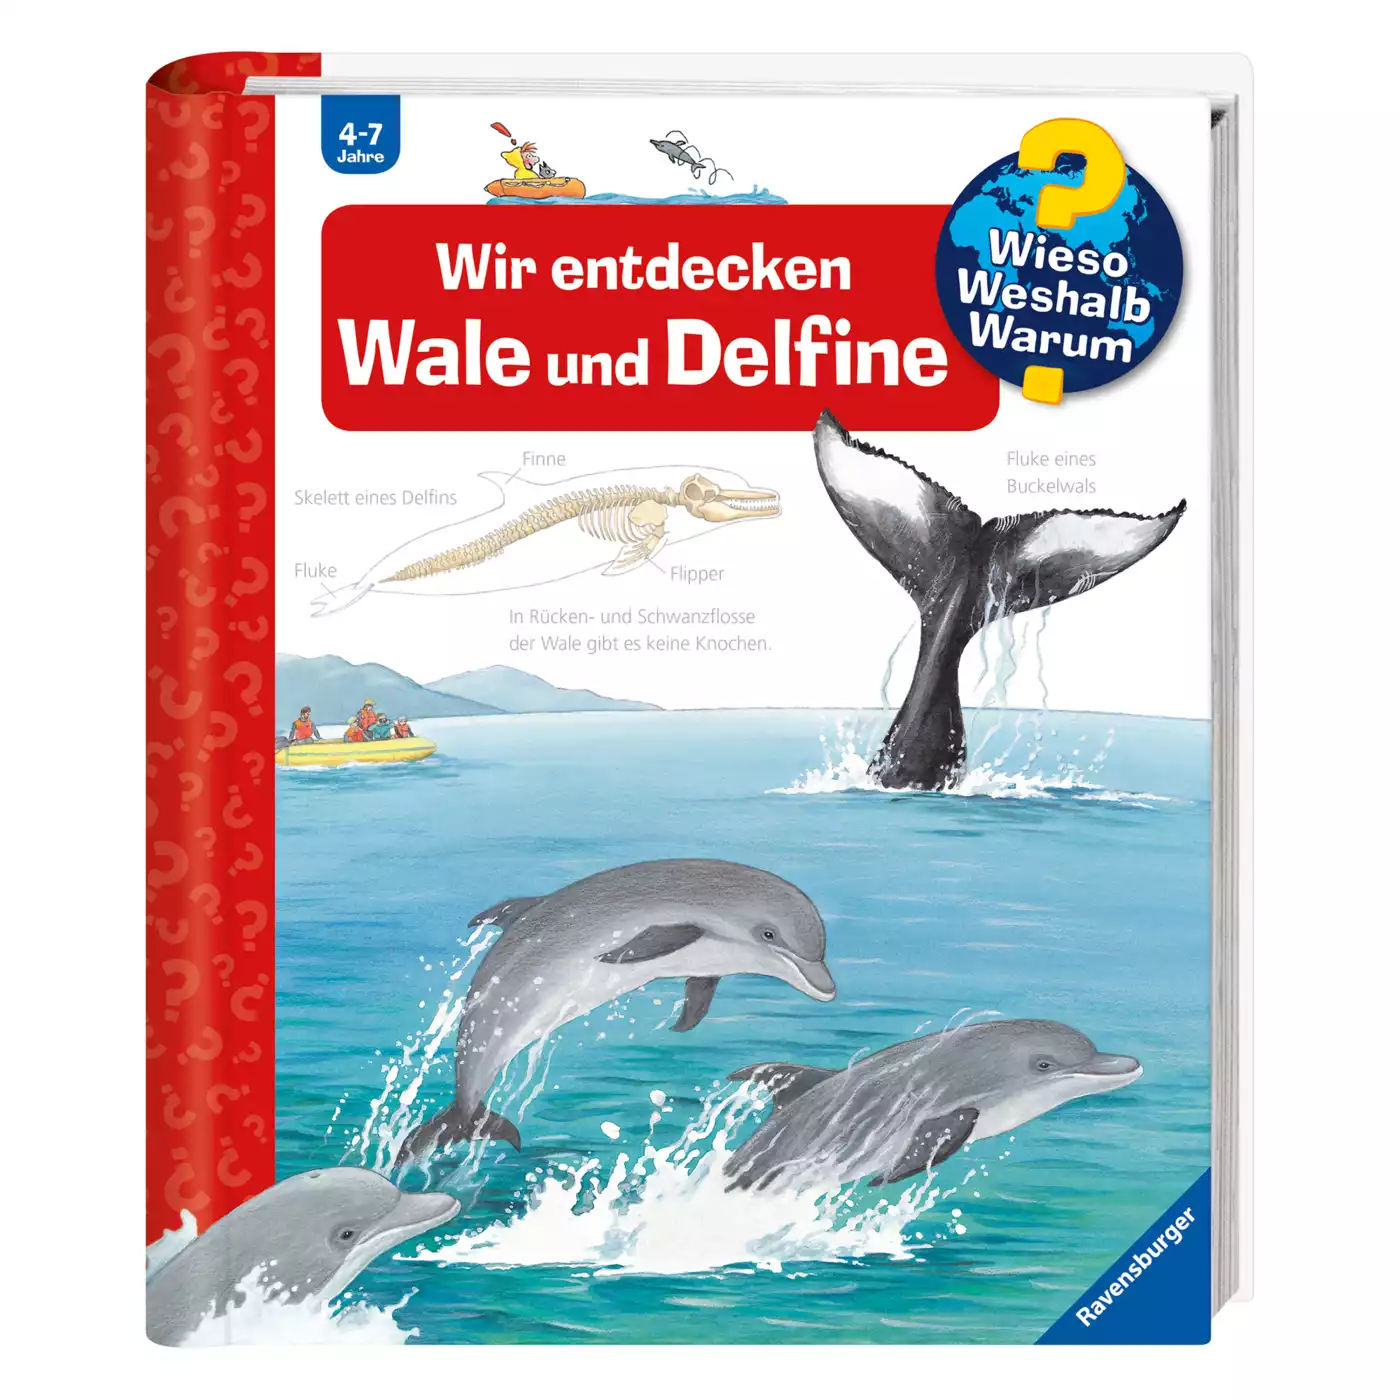 WWW Wir entdecken Wale und Delfine Ravensburger 2000530008307 3